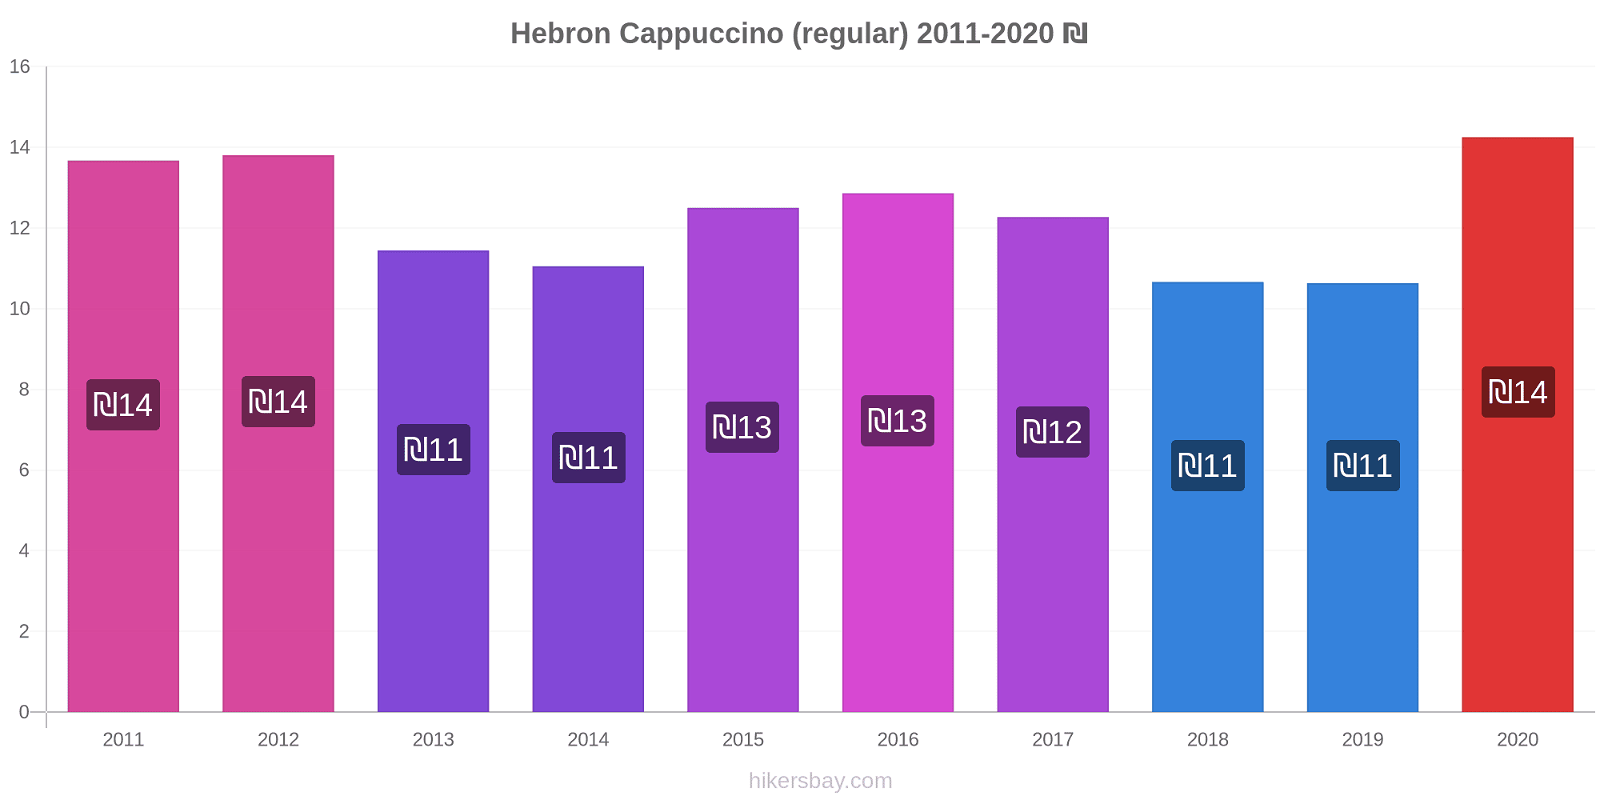 Hebron price changes Cappuccino (regular) hikersbay.com